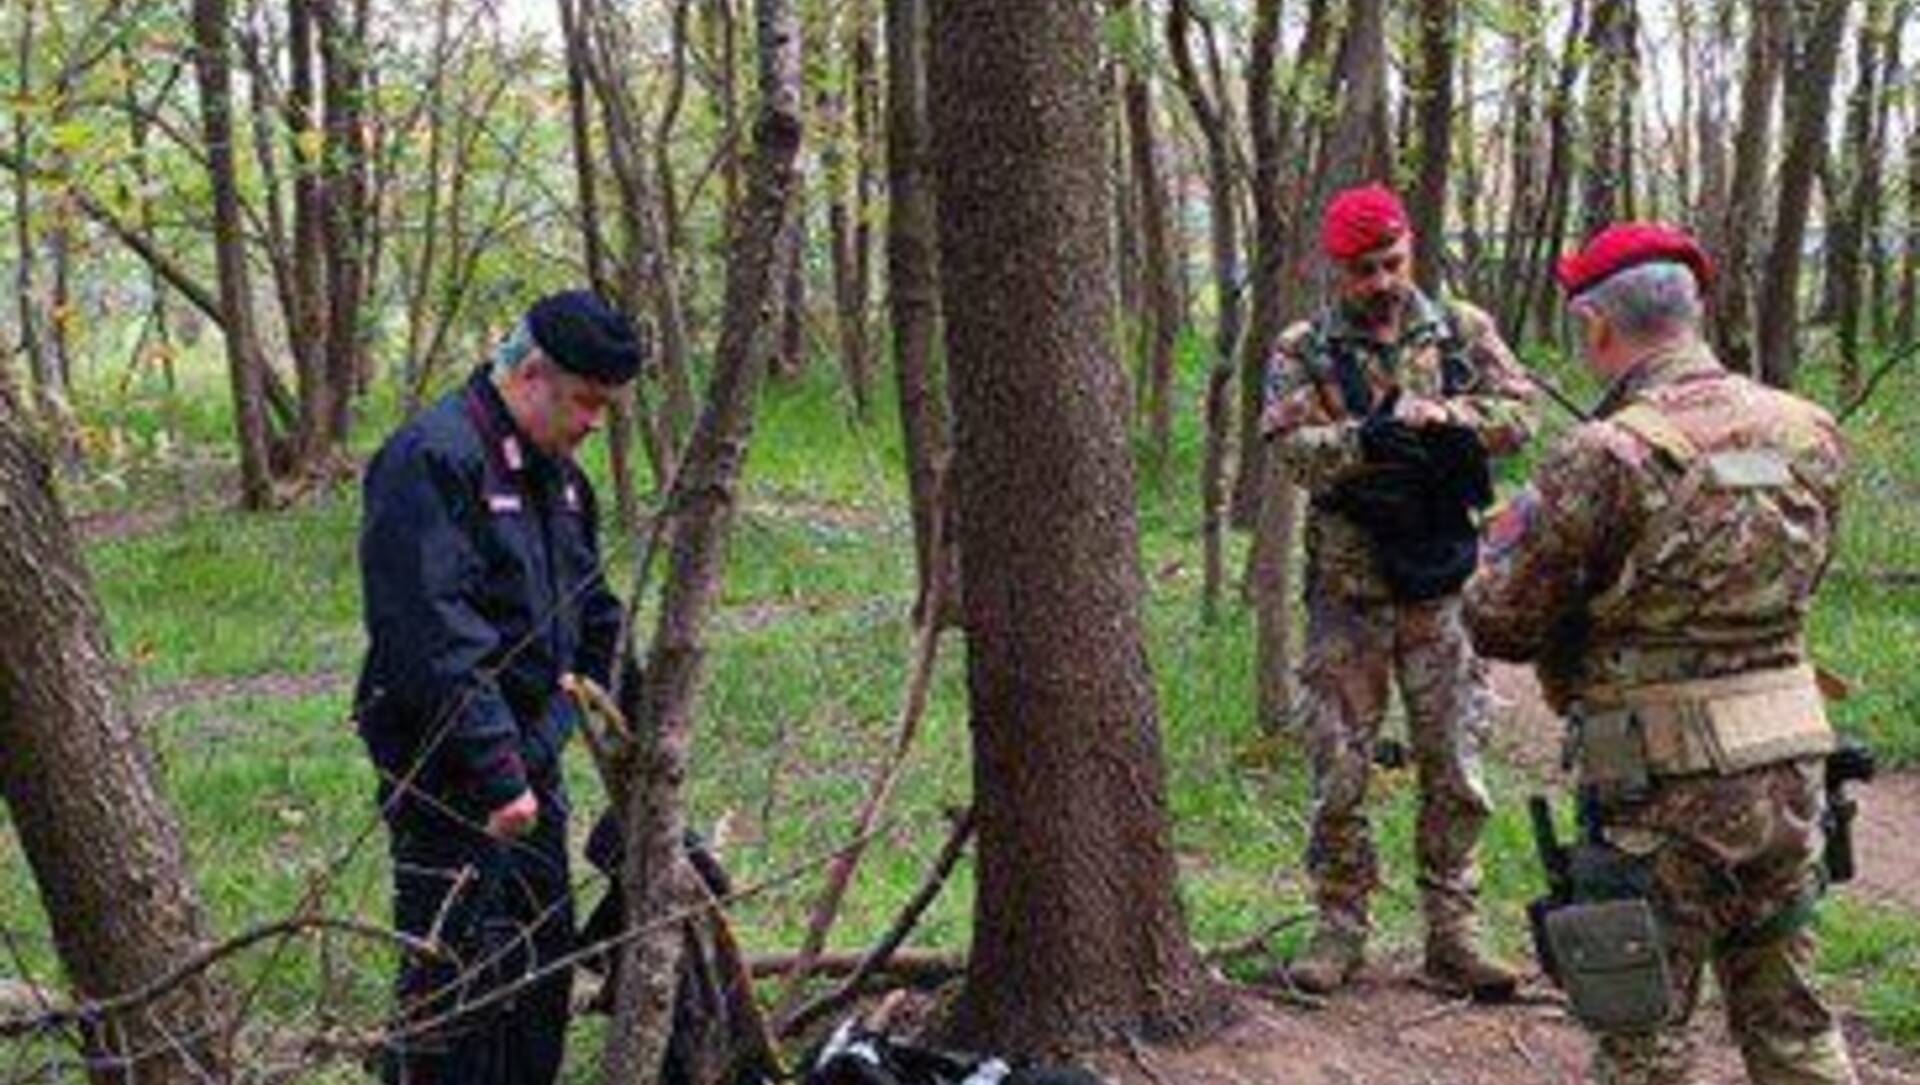 Nuova operazione antispaccio nel bosco: trovati eroina, cocaina e hascish